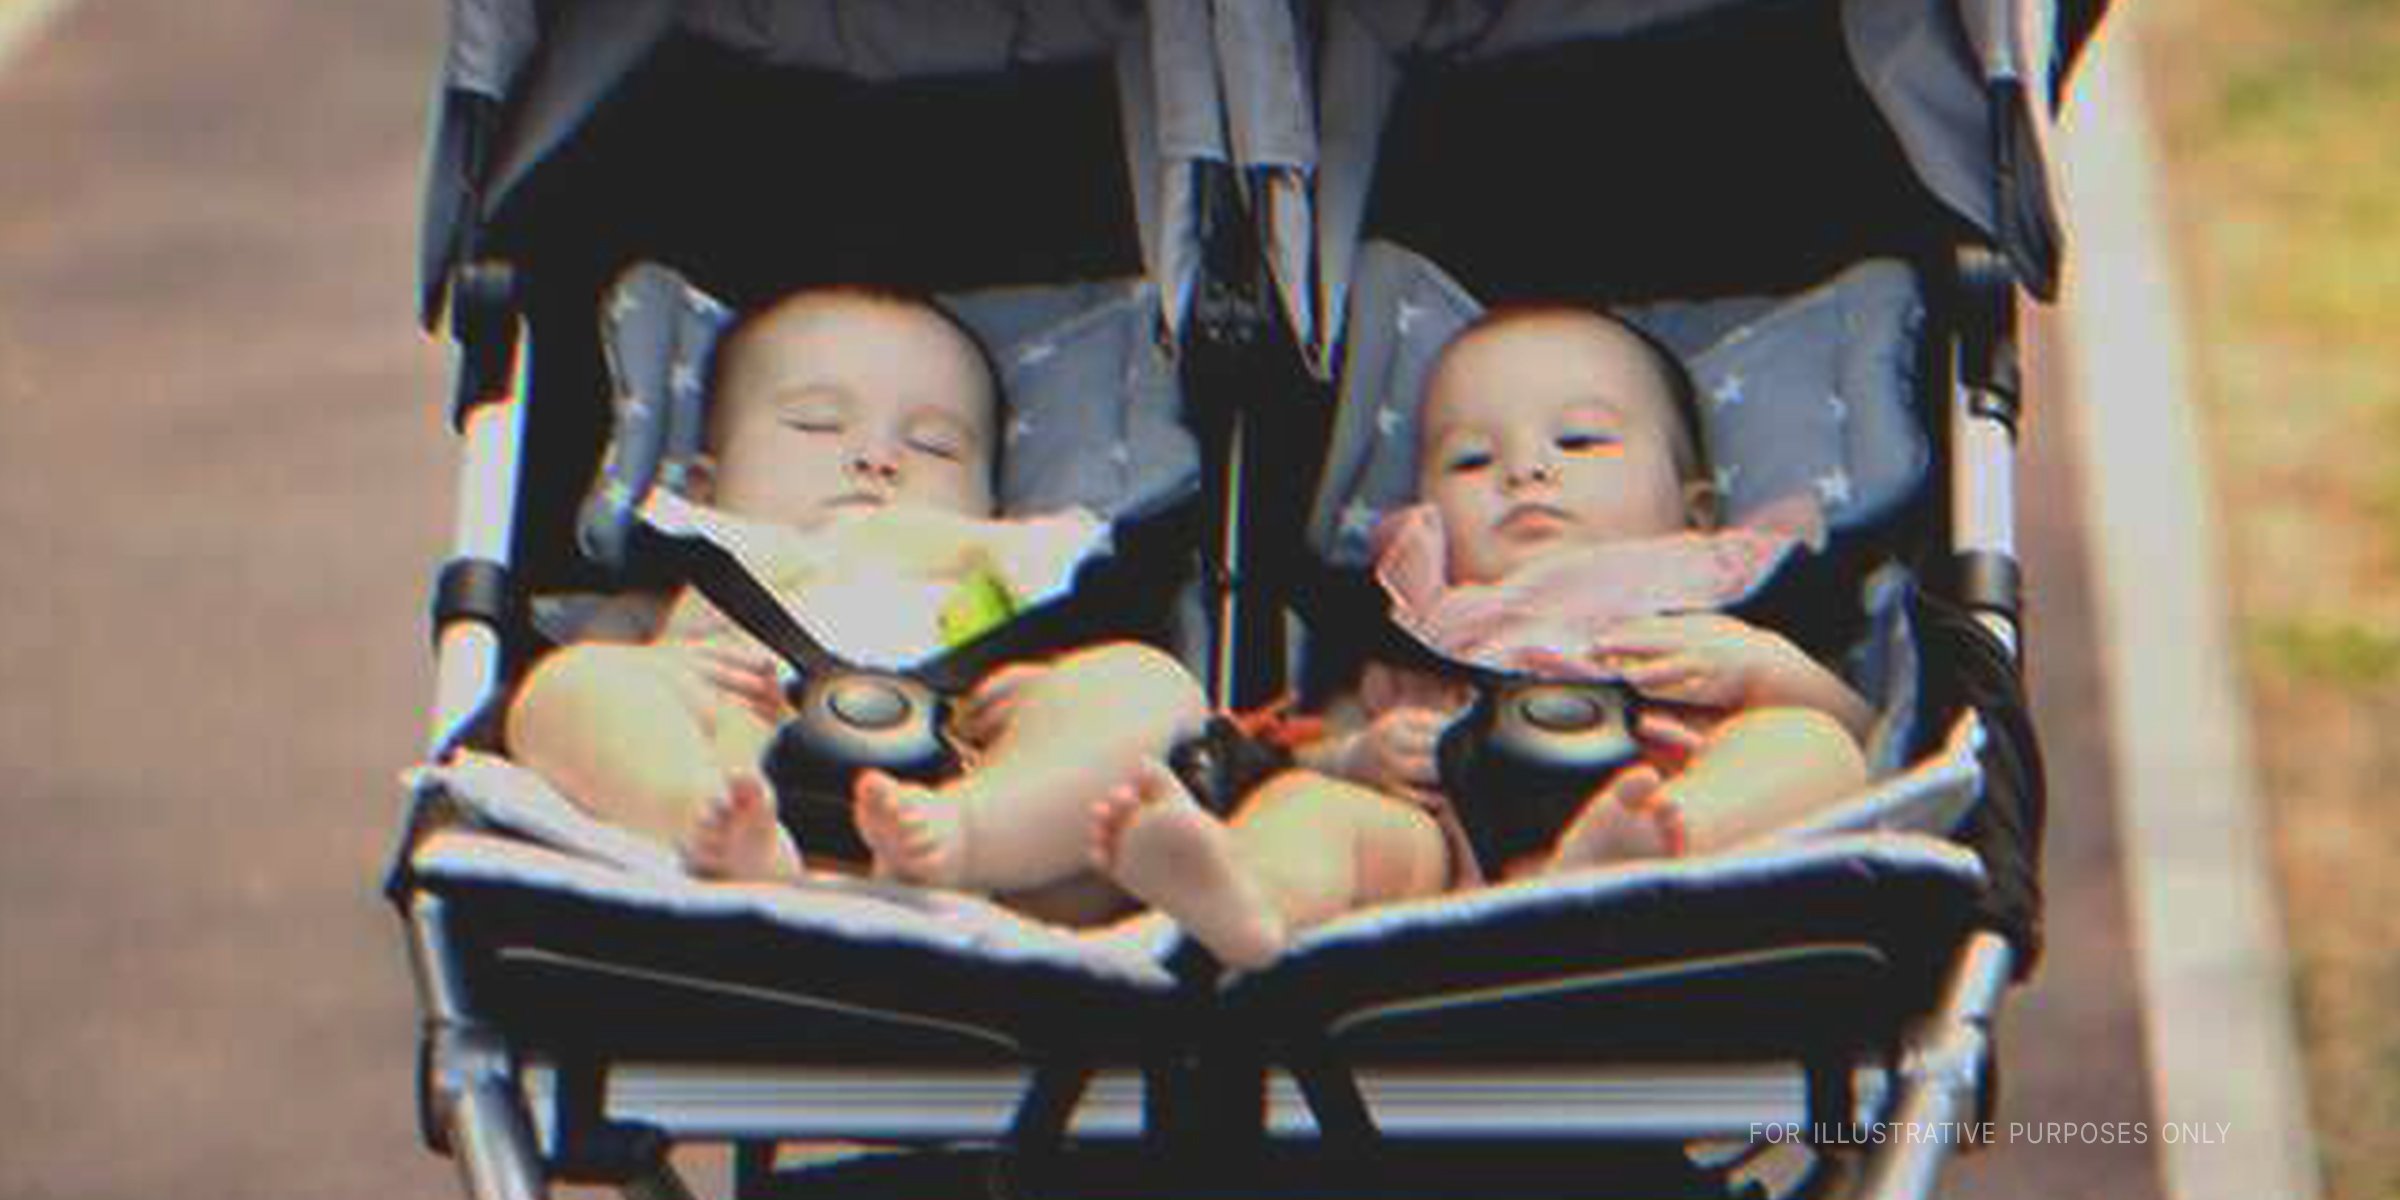 Twin babies in a stroller | Source: Shutterstock 